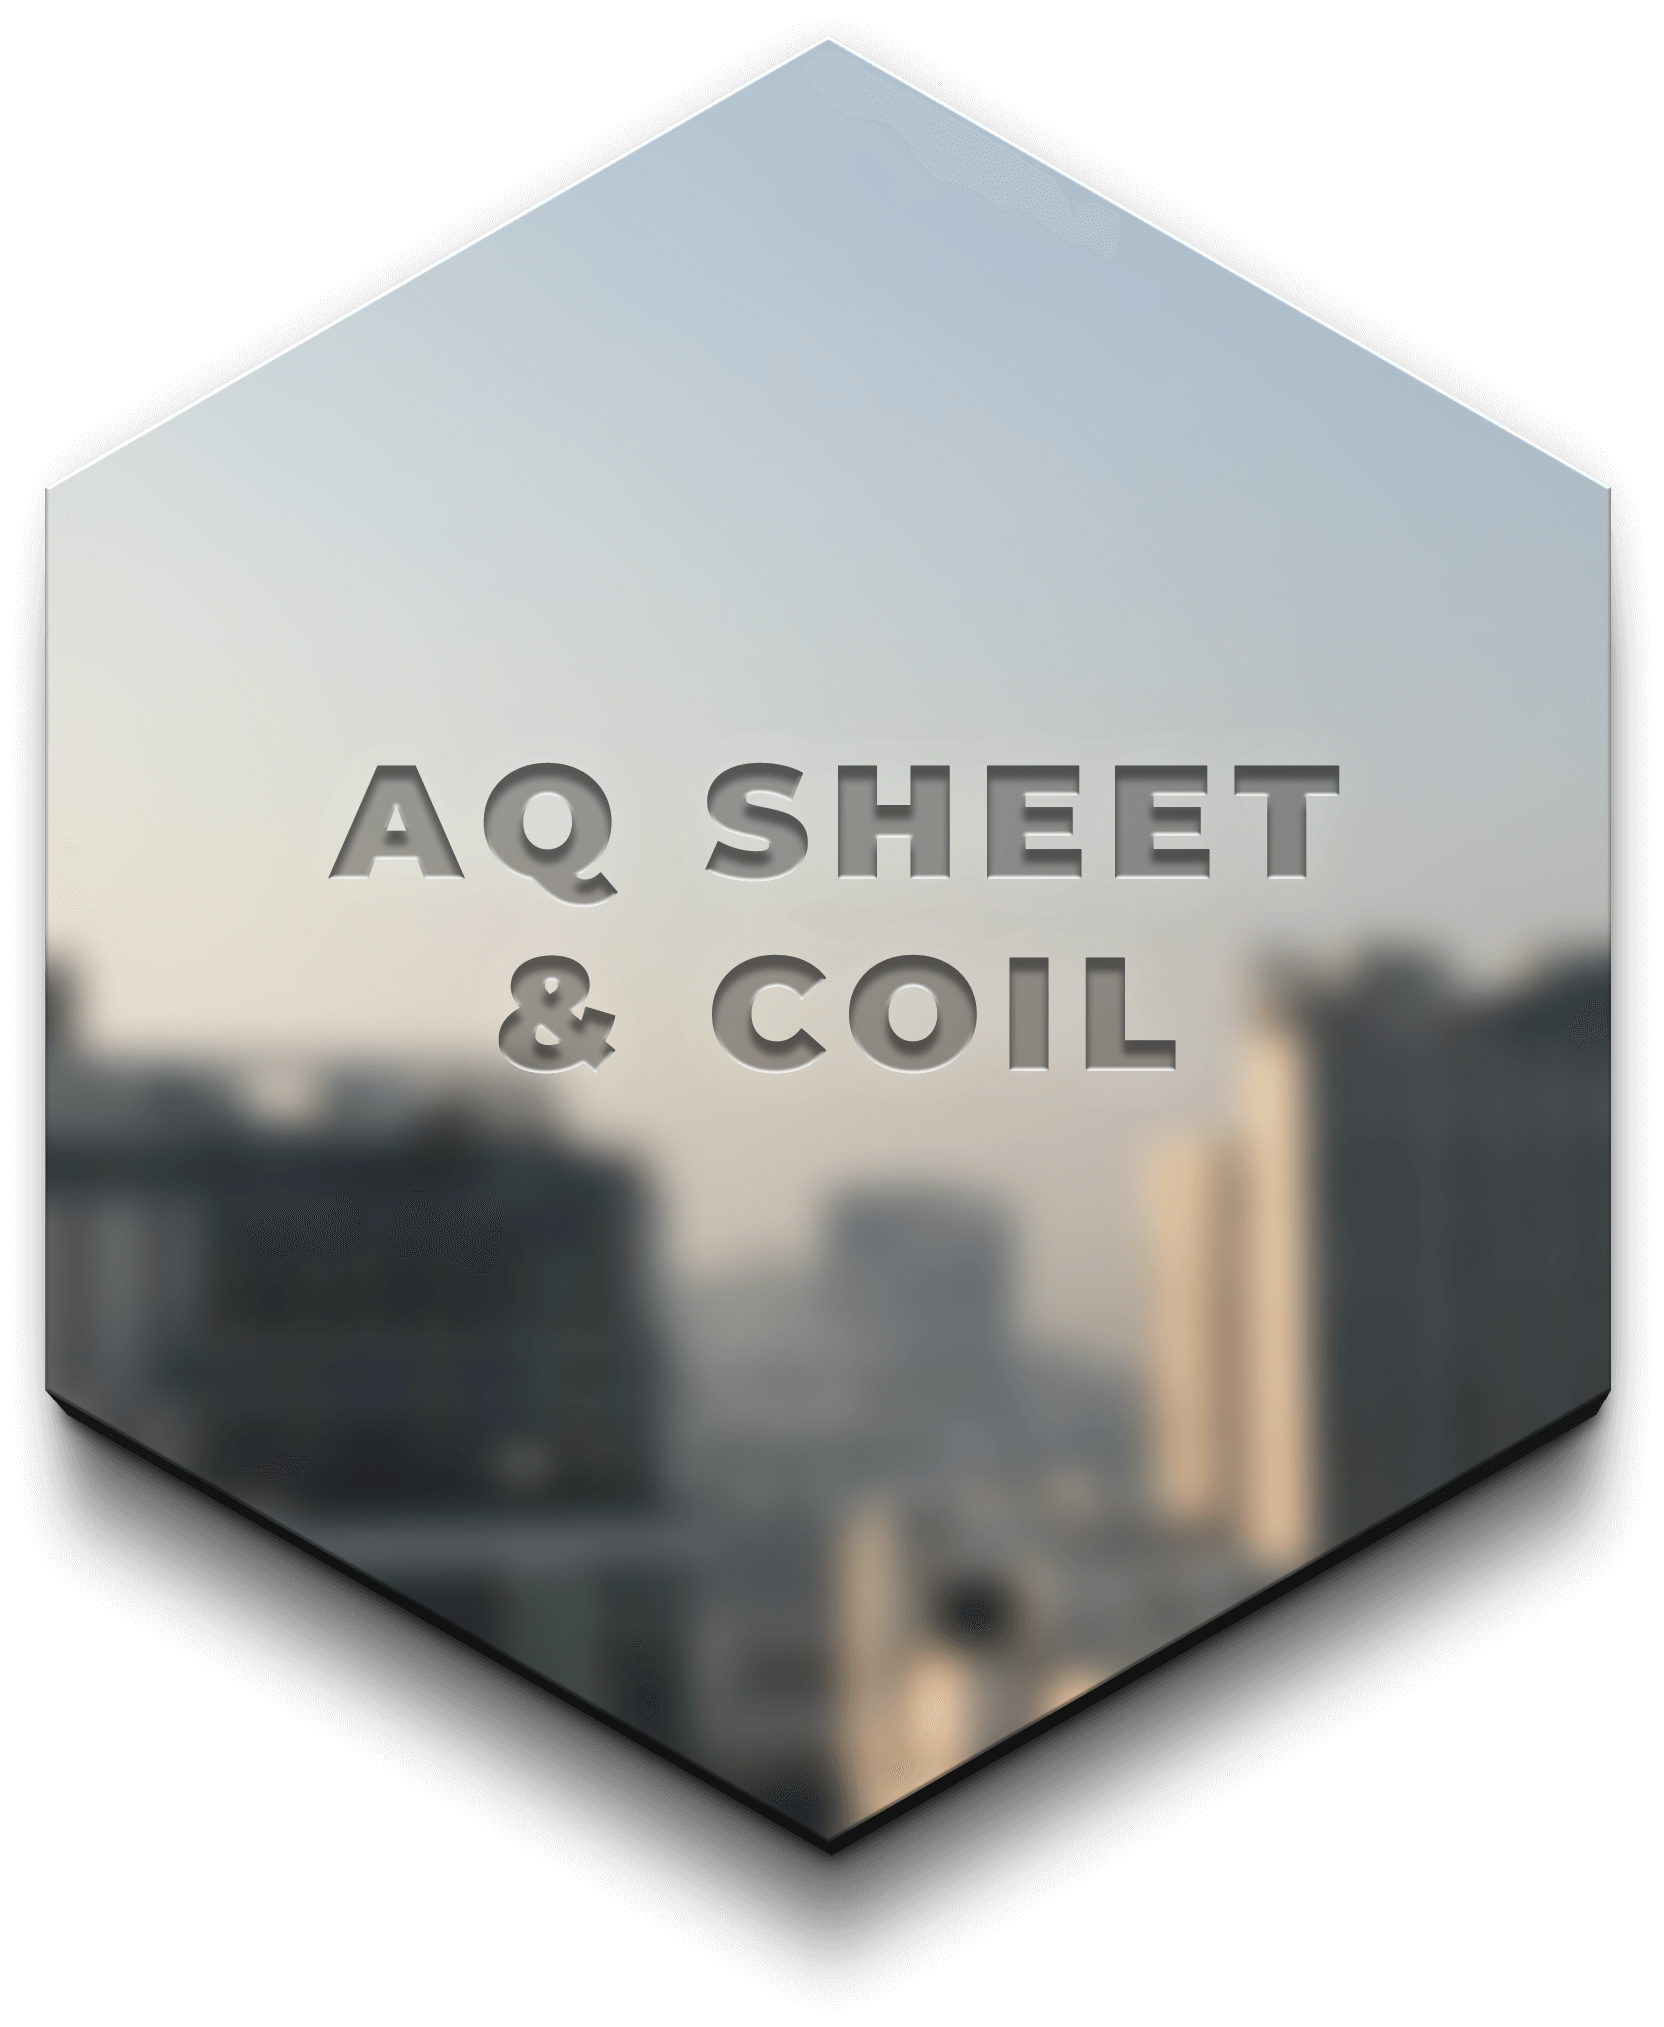 AQ sheet &coil